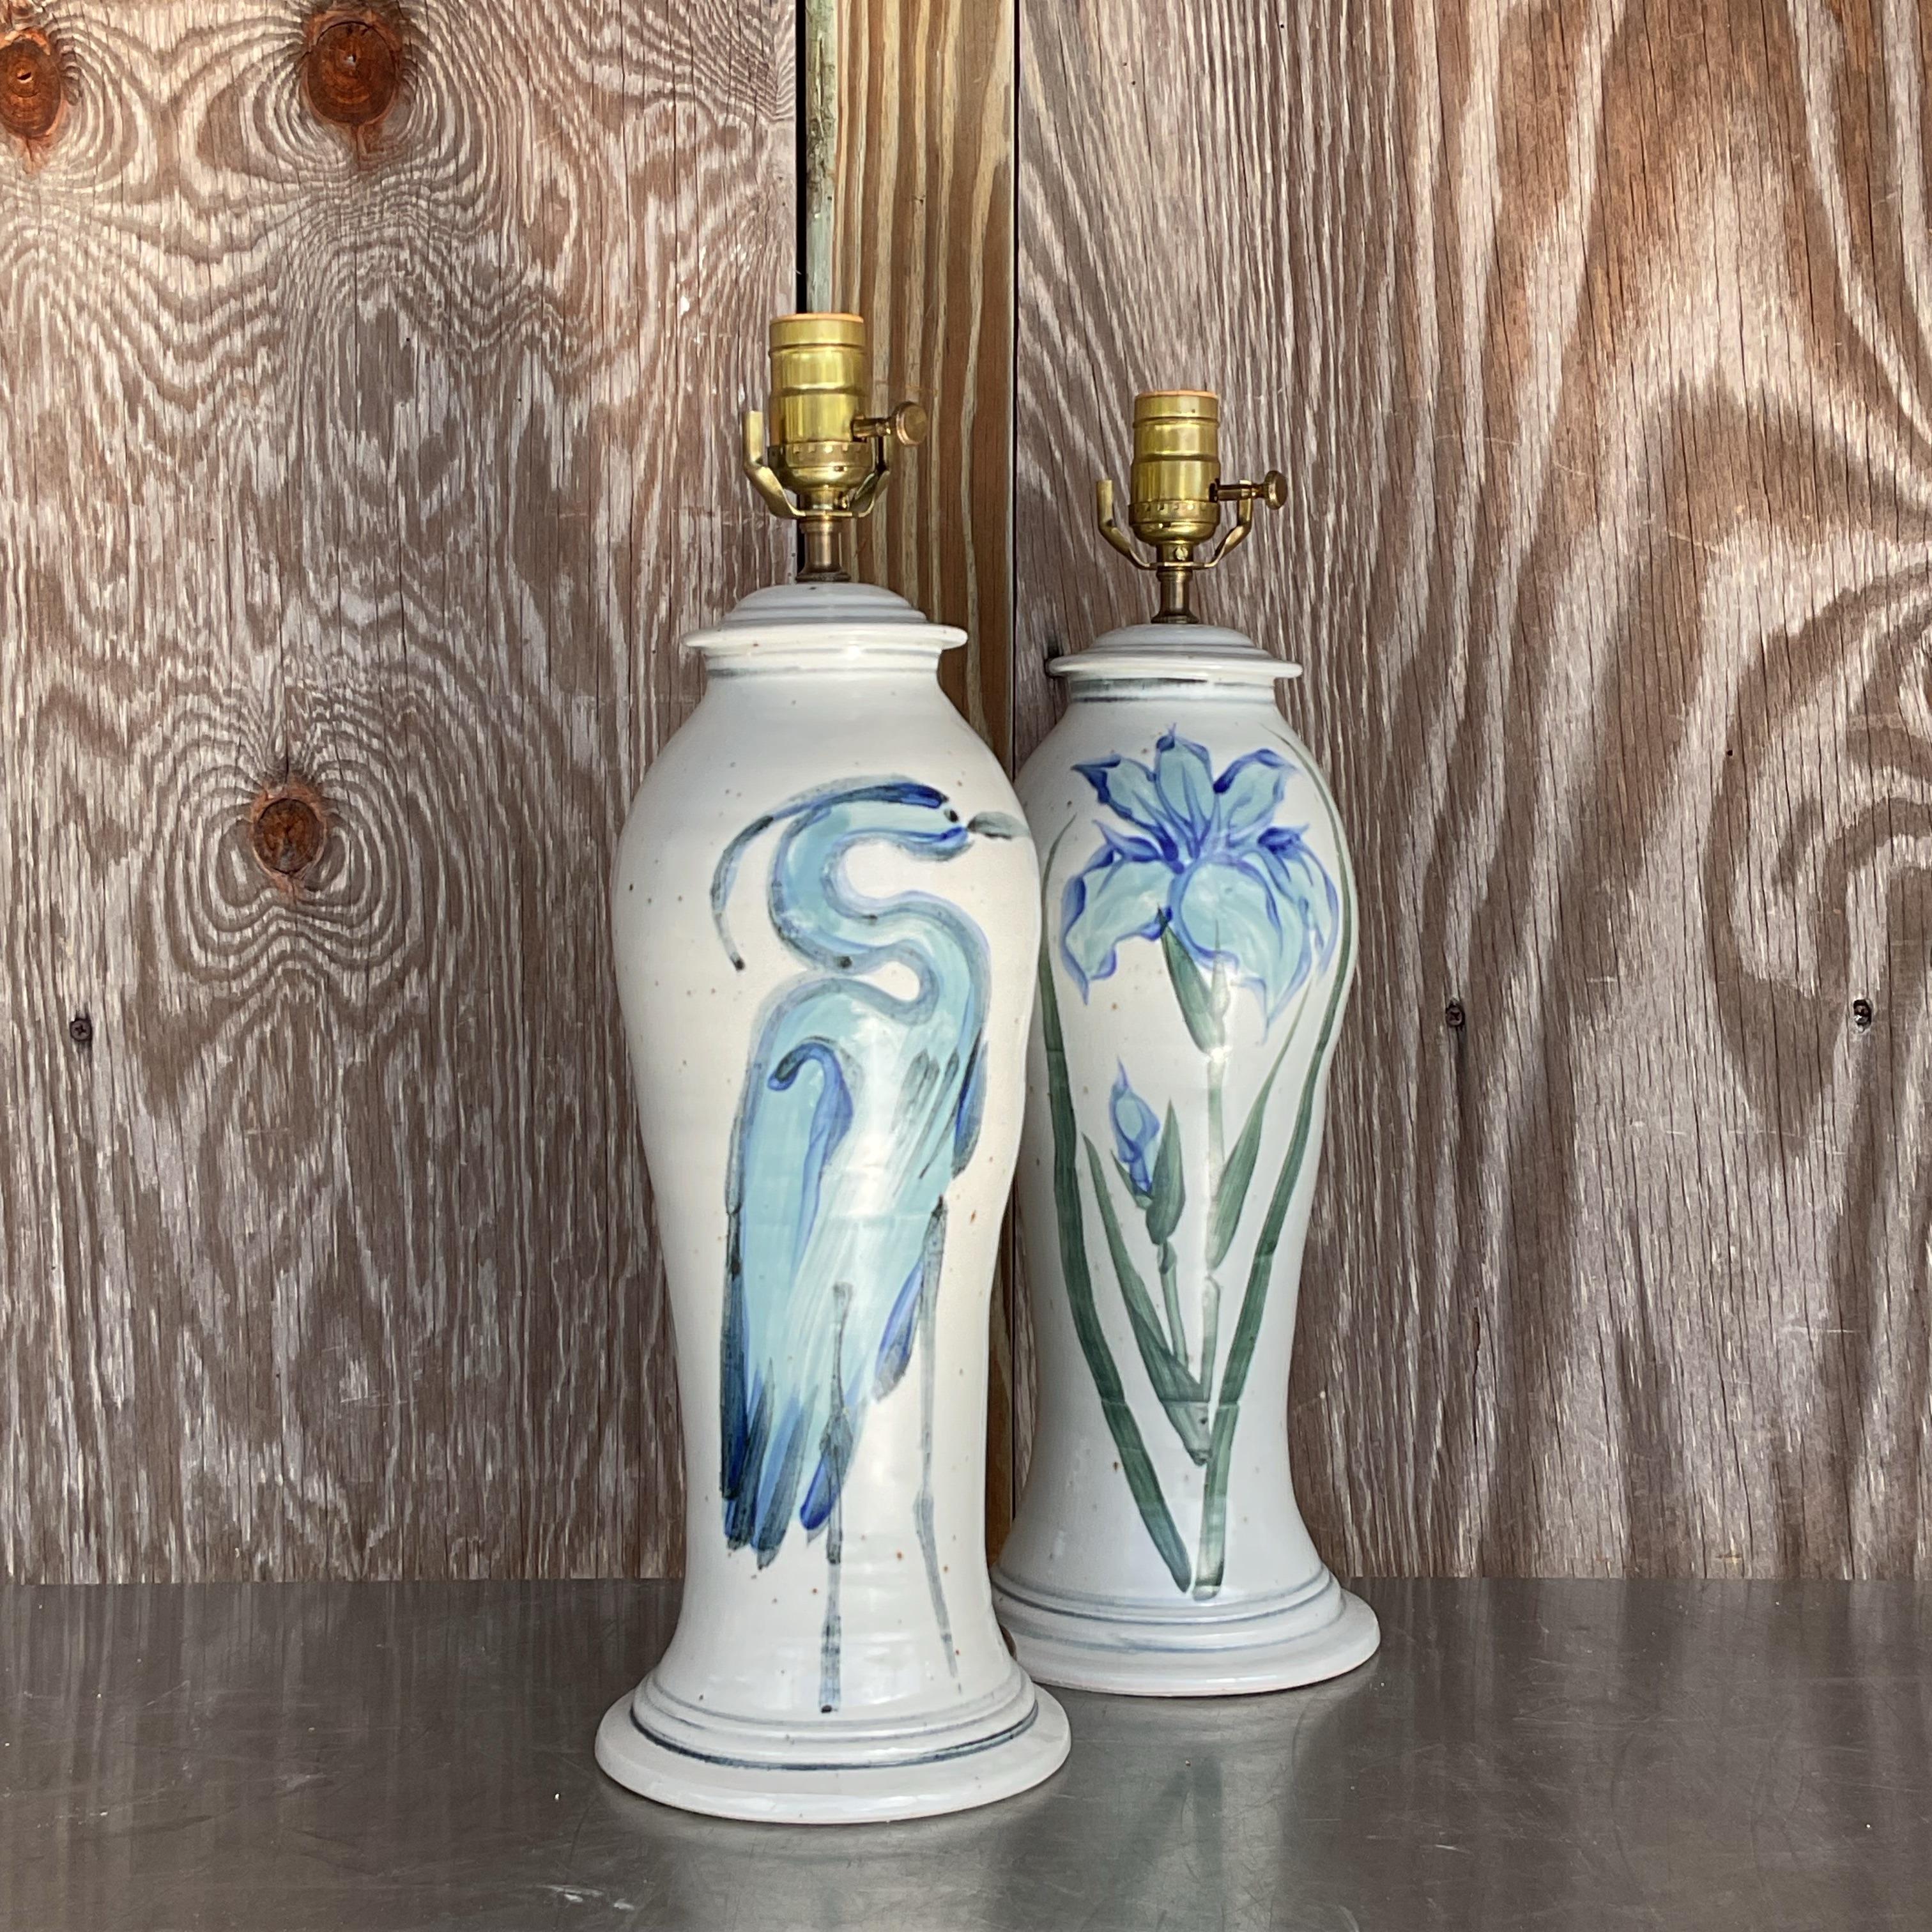 Wunderschönes Paar handbemalter Keramiklampen mit Florida-Motiv, verschnörkelten Blumen, Bambus und einem Kranich in eleganten Blautönen. Skurrile Ergänzung für jede Kredenz oder jedes Gästezimmer. Erworben aus einem Nachlass in Palm Beach.